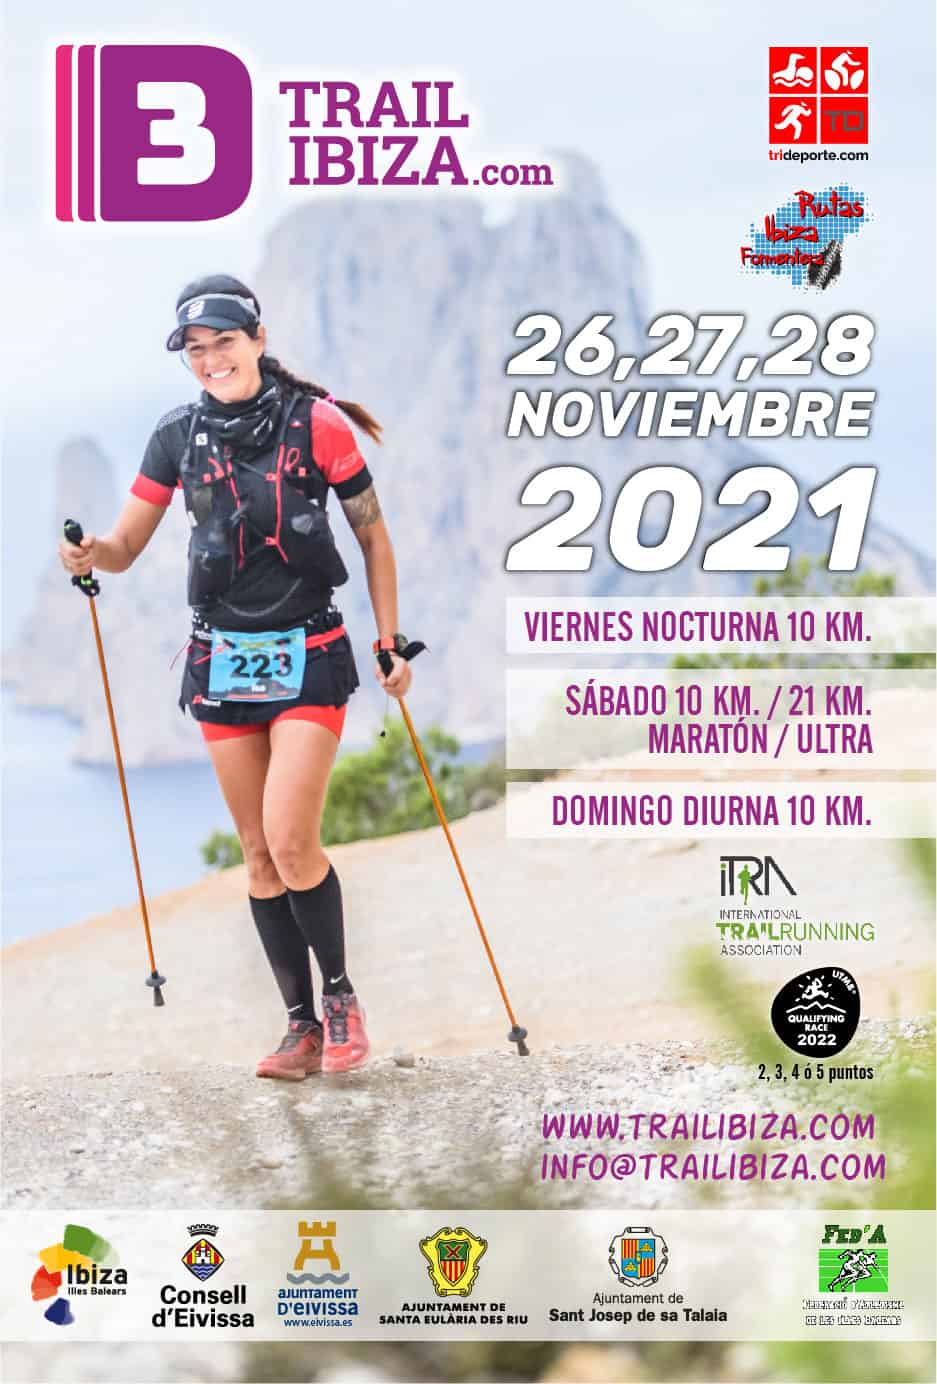 3-dias-trail-ibiza-2021-welcometoibiza